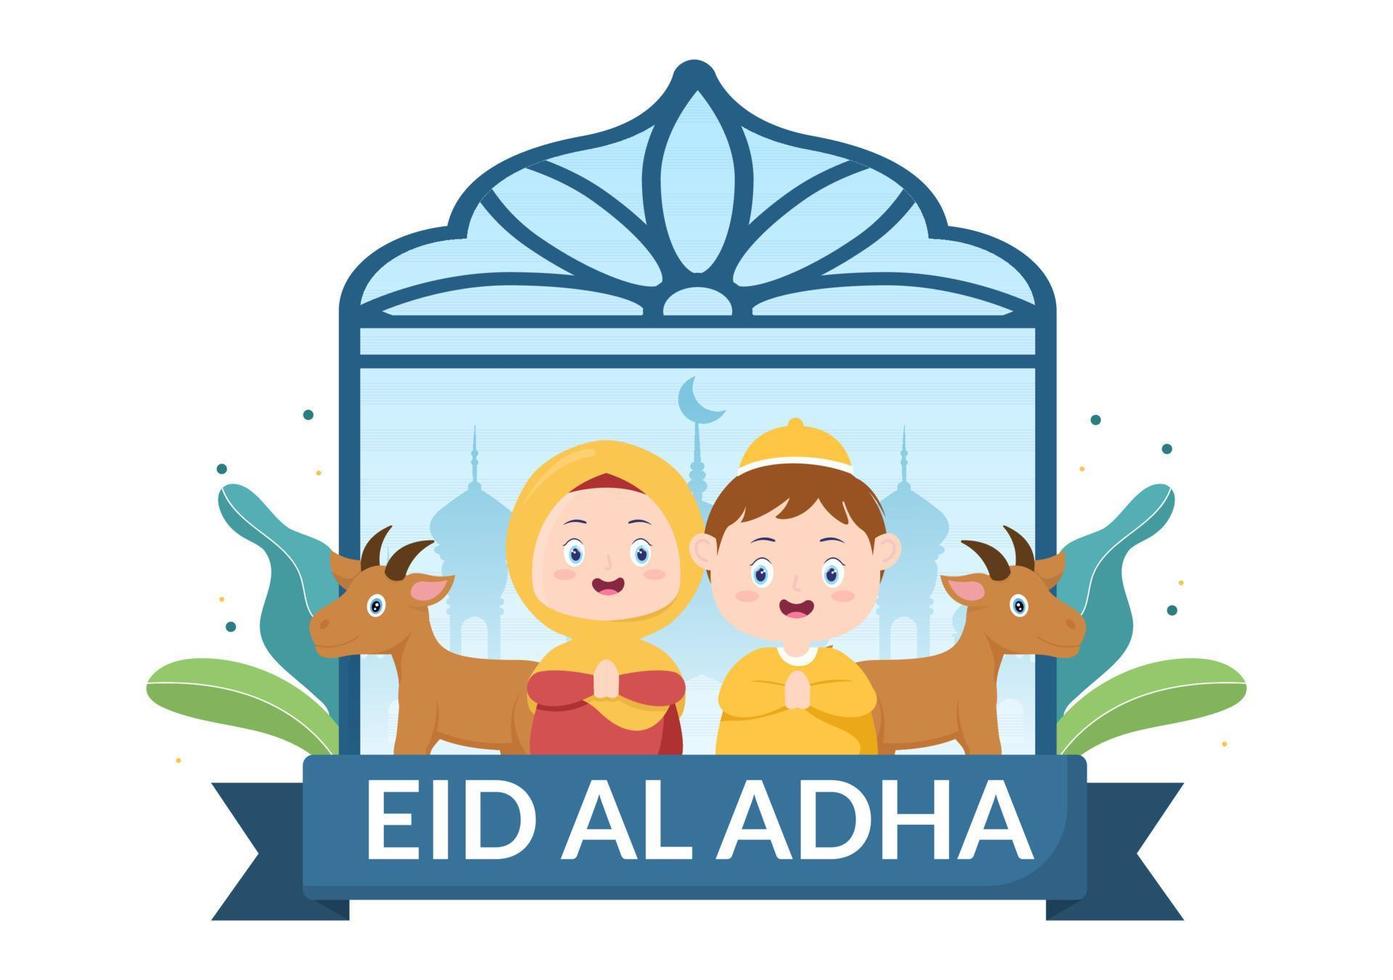 eid al adha sfondo cartone animato illustrazione per la celebrazione dei musulmani con la macellazione di un animale come mucca, capra o cammello e condividerlo vettore